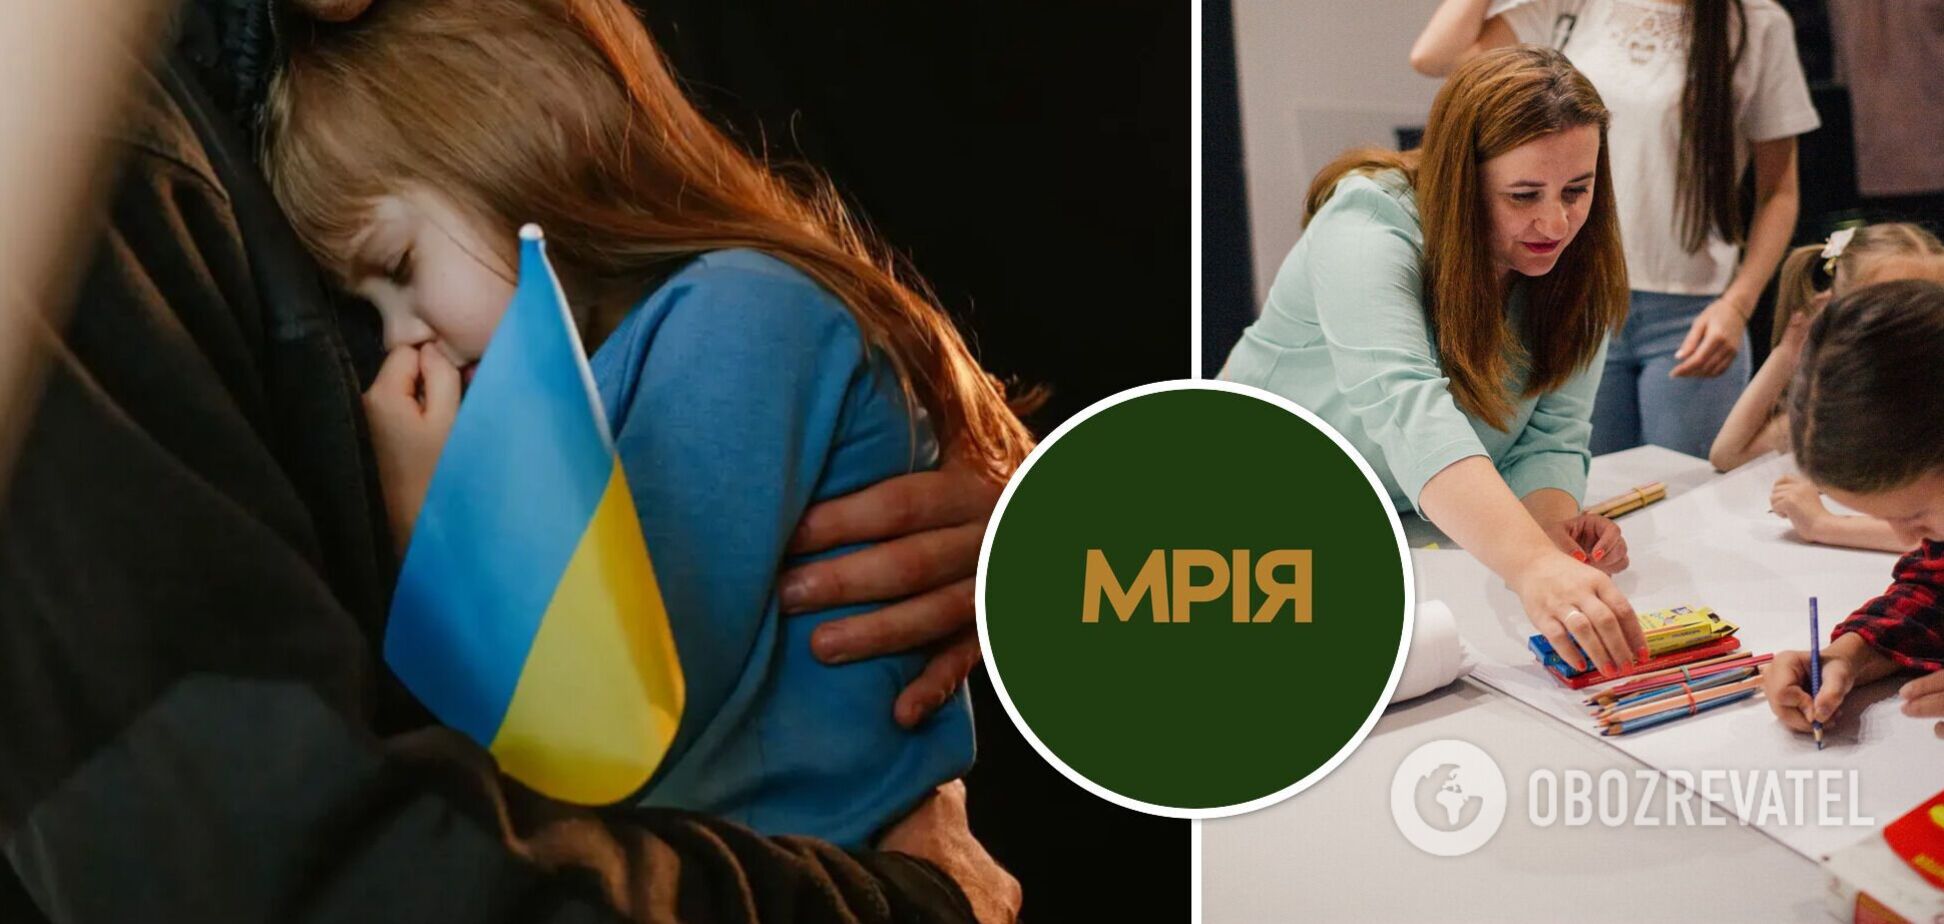 Фонд 'Мрия' начал программу 'Образовательная поддержка' для детей погибших воинов и пленных украинцев